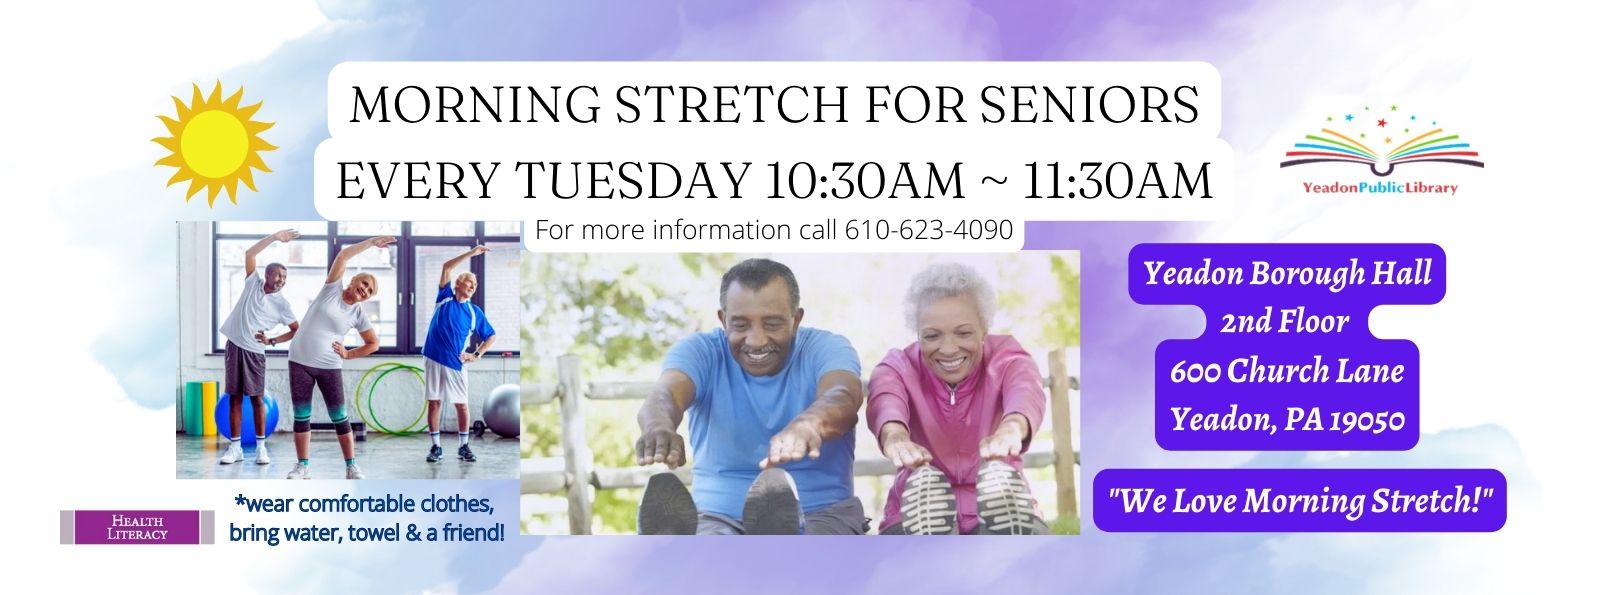 Morning Stretch for Seniors